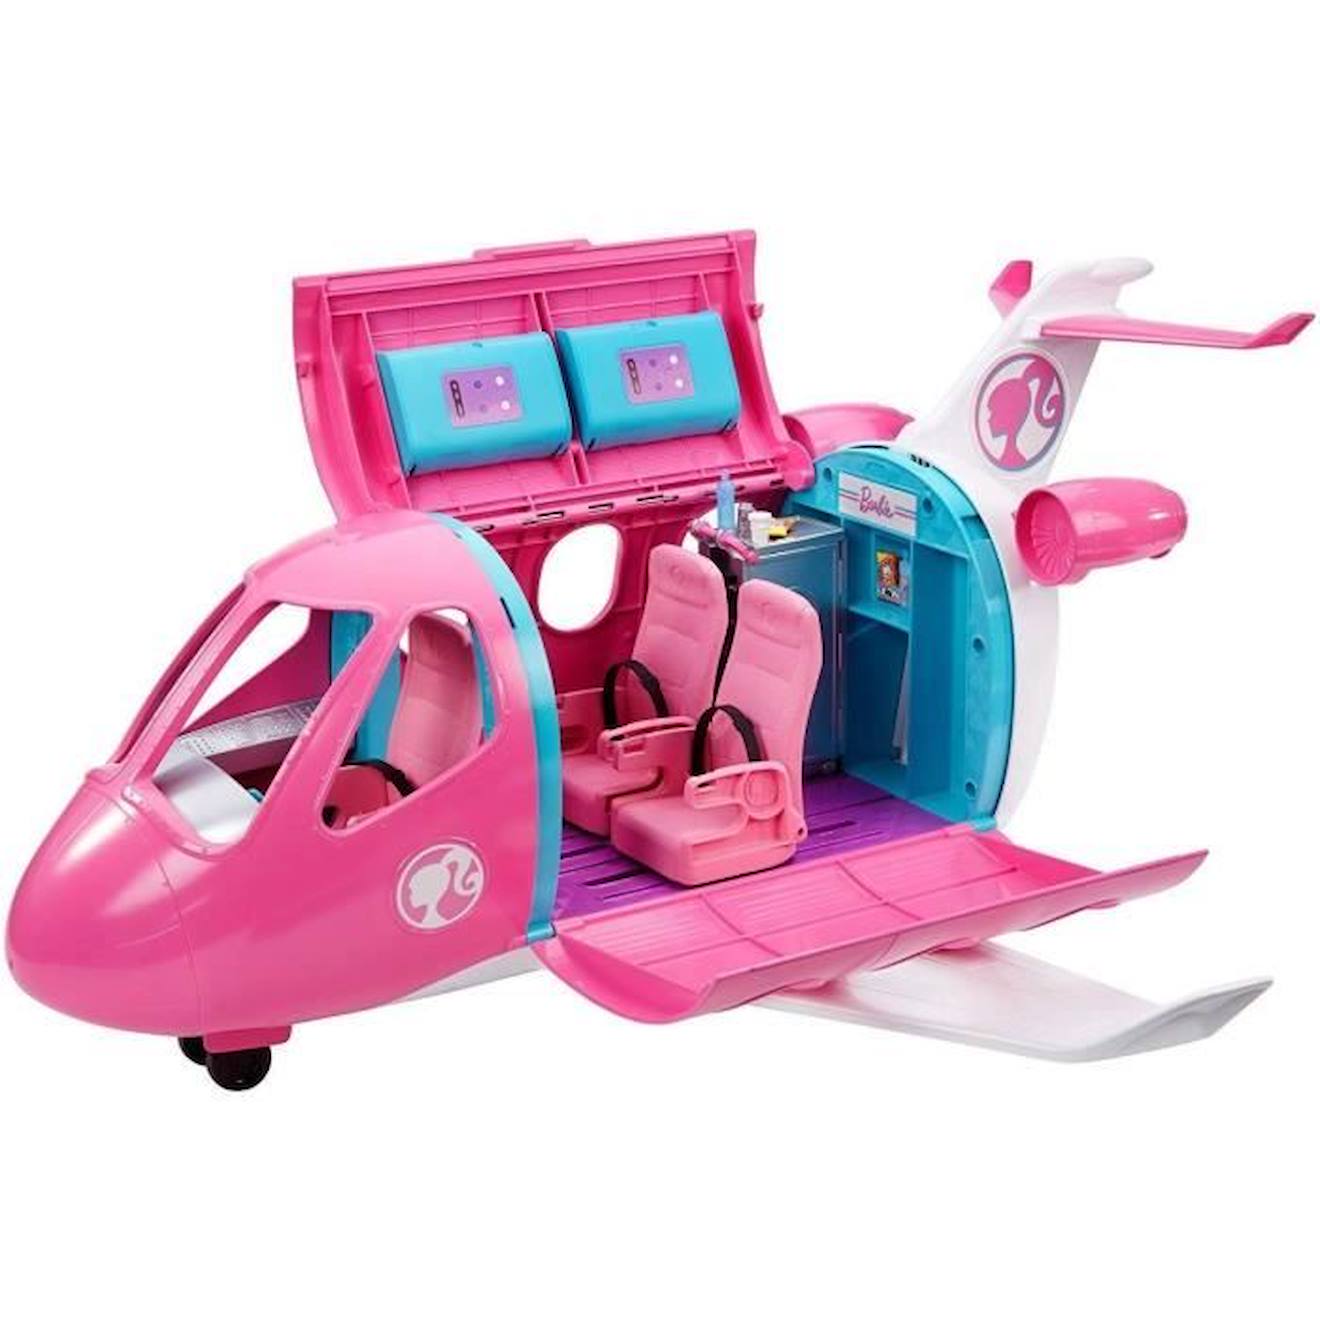 Barbie - L'avion De Rêve Avec Mobilier Et Rangement - Plus De 15 Accessoires - 58cm - Dès 3 Ans Rose